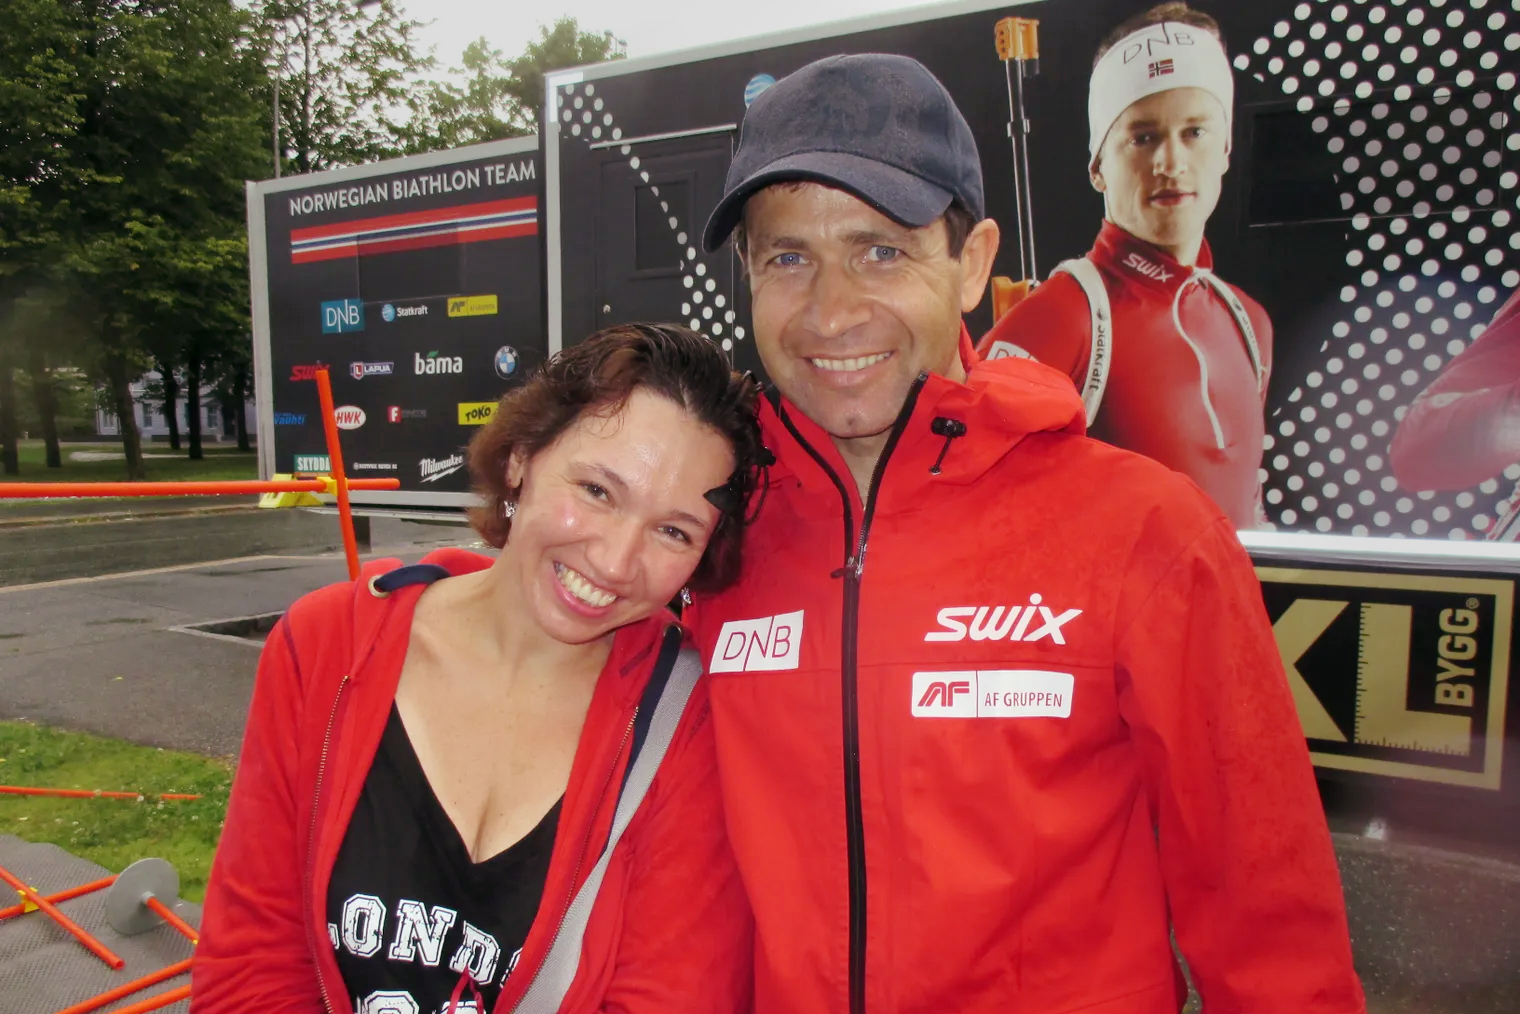 Я и Уле-Эйнар Бьерндален. Снимок сделан в Драммене в августе 2015 года, это было мероприятие для норвежских биатлонных спортшкол, куда пригласили и всех желающих. Ну и я решила одним днем сгонять из Москвы, я так часто делала